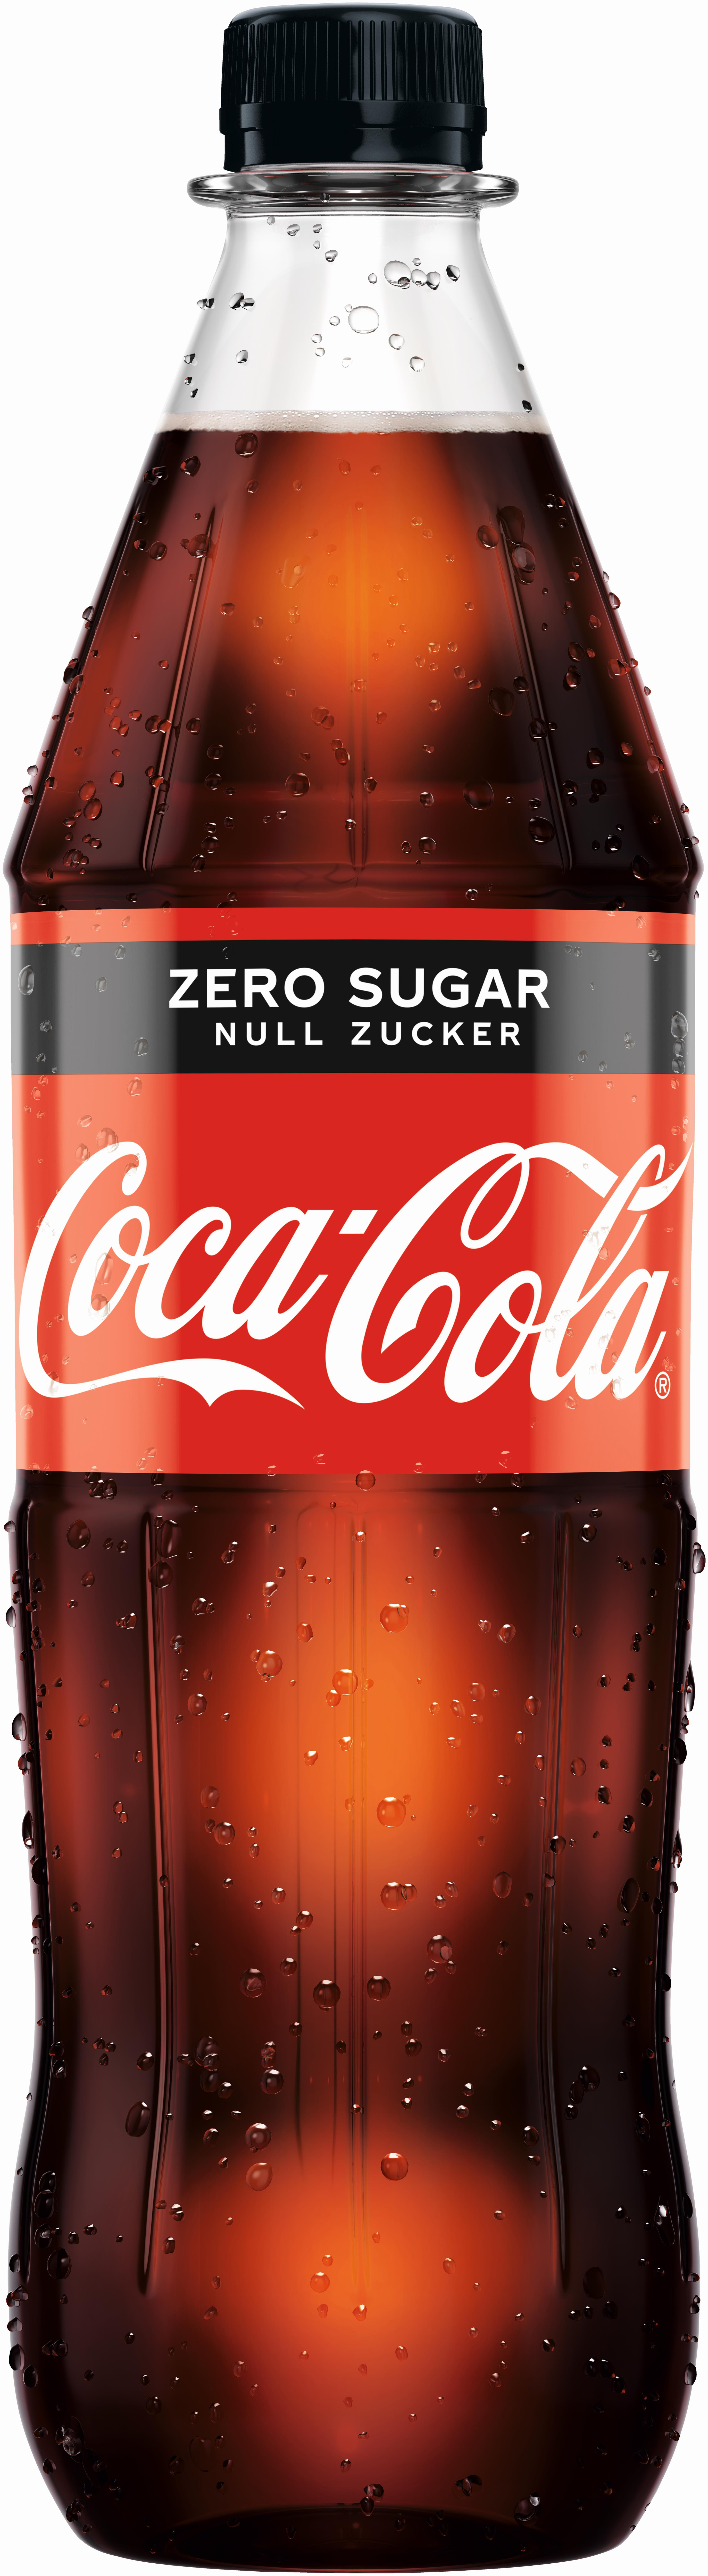 Coca-Cola Zero Sugar Null Zucker